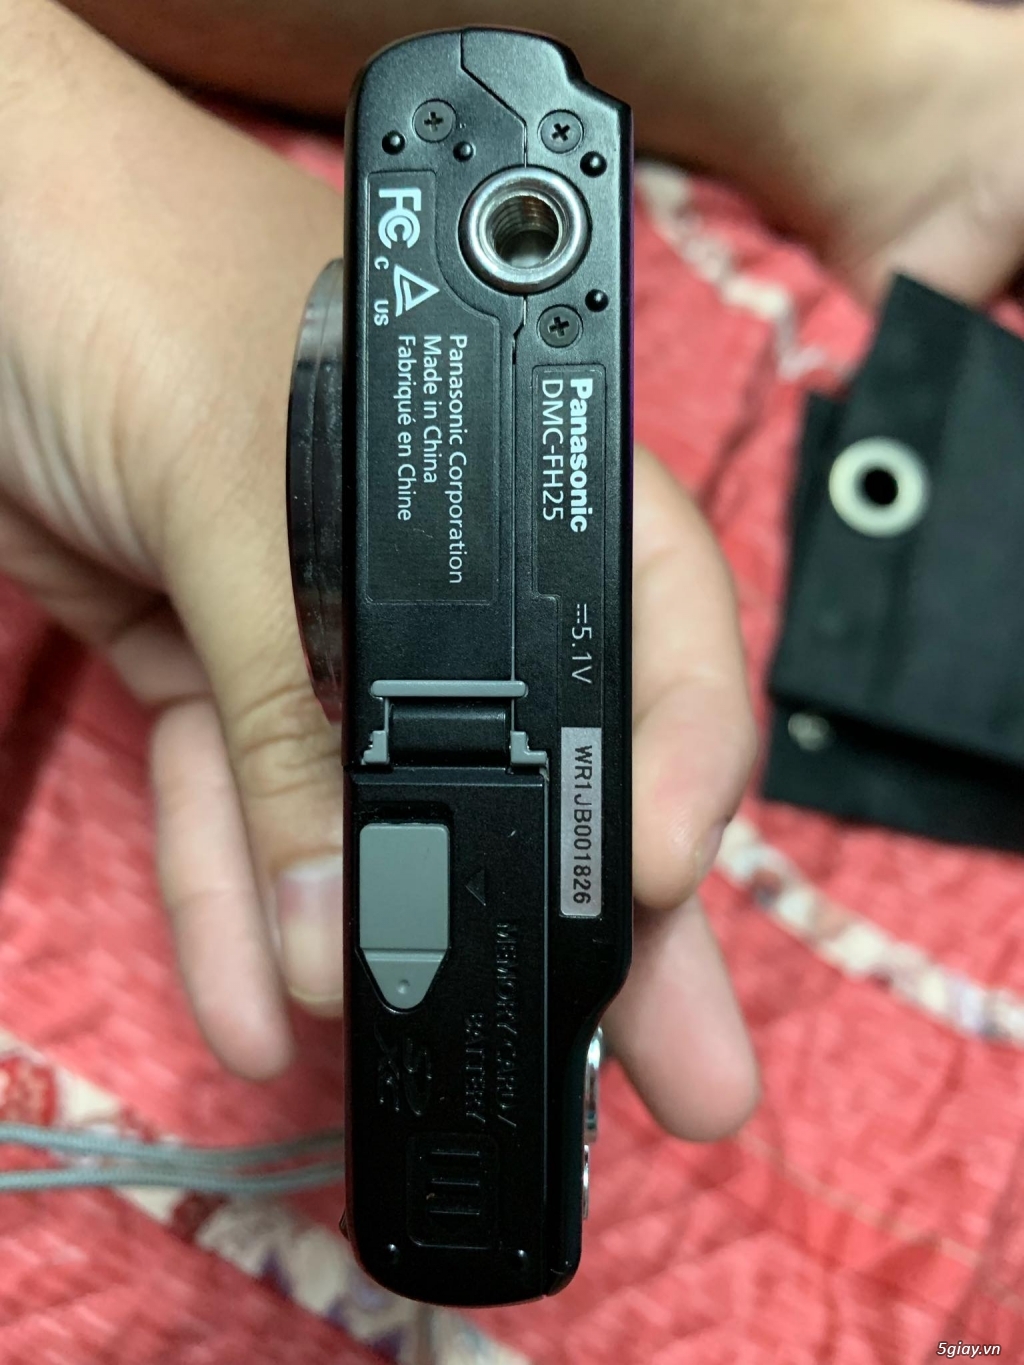 Bán Panasonic Lumix Dmc-fh25 ong kính Leica zoom8x như mới - 3